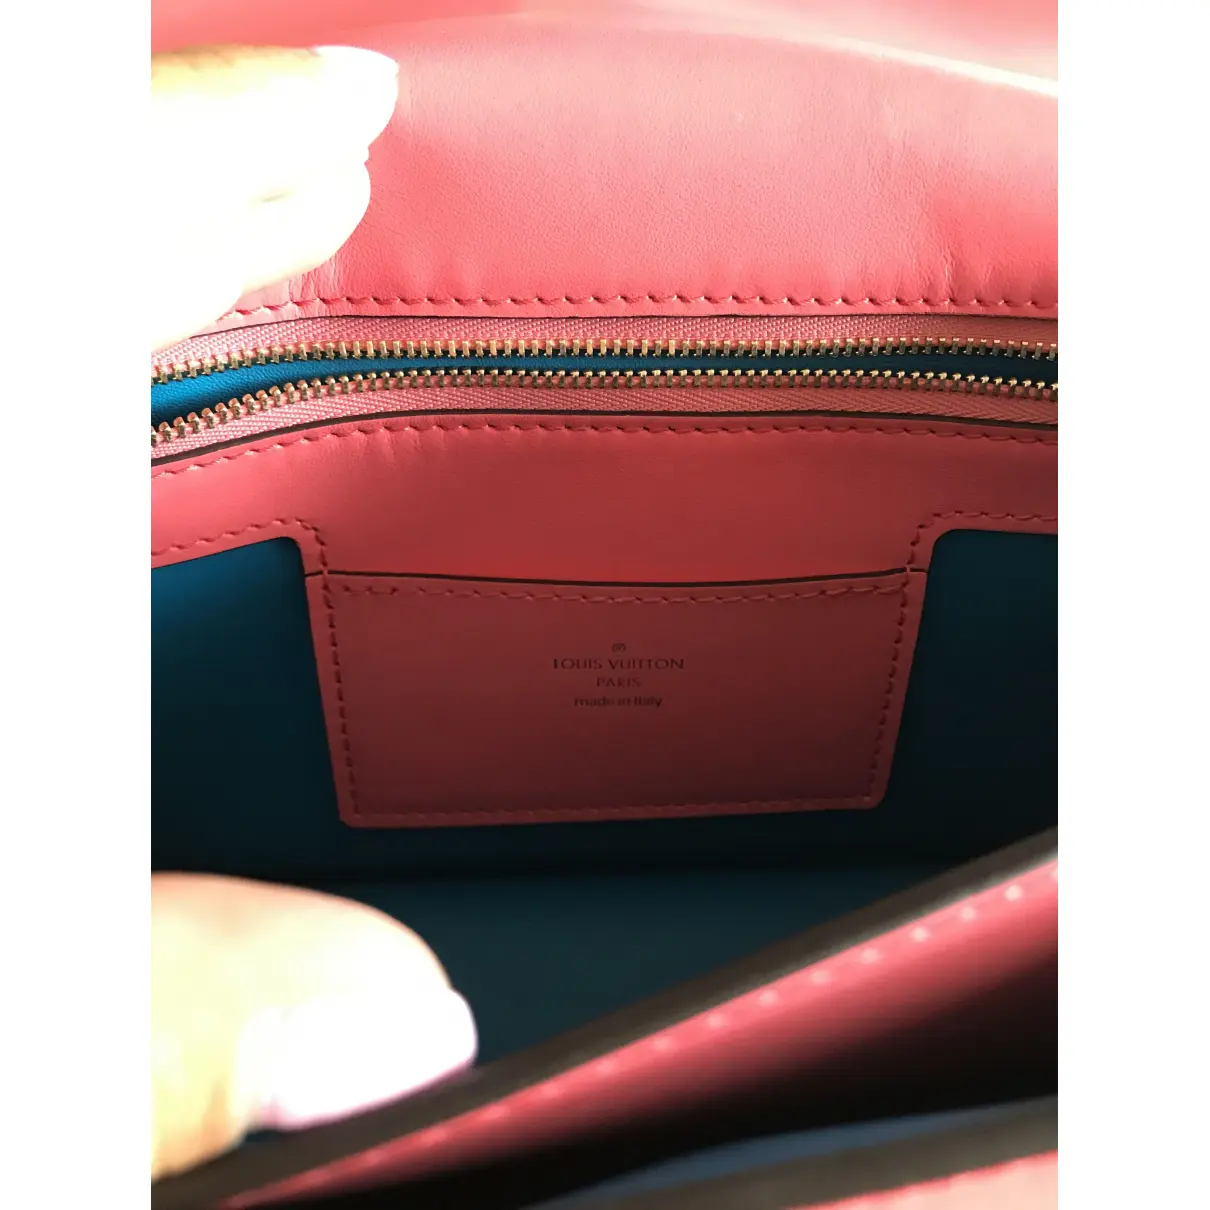 Pont 9 leather handbag Louis Vuitton